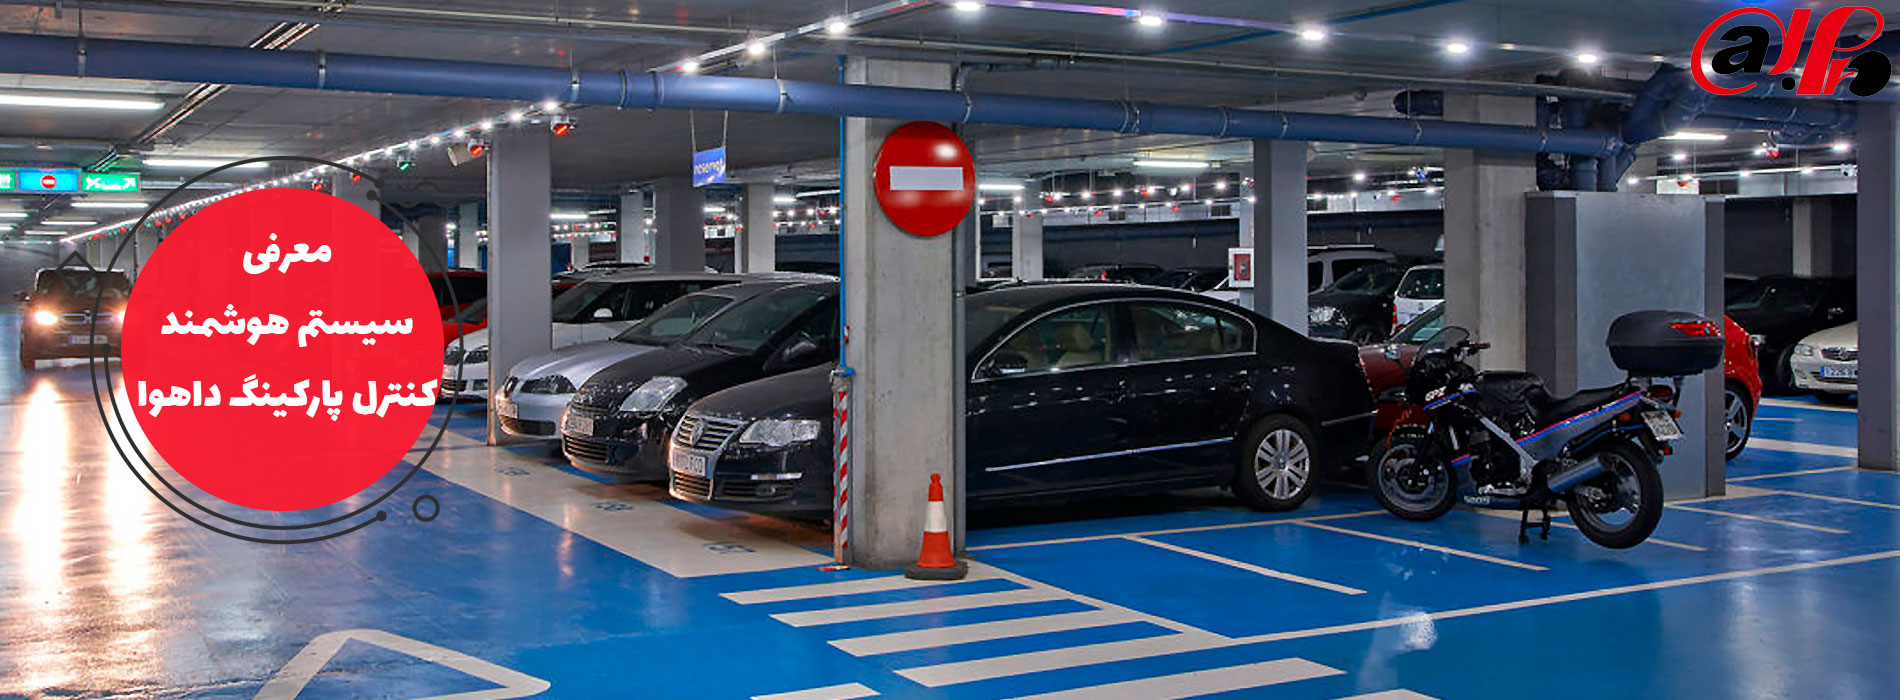 سیستم هوشمند کنترل پارکینگ داهوا